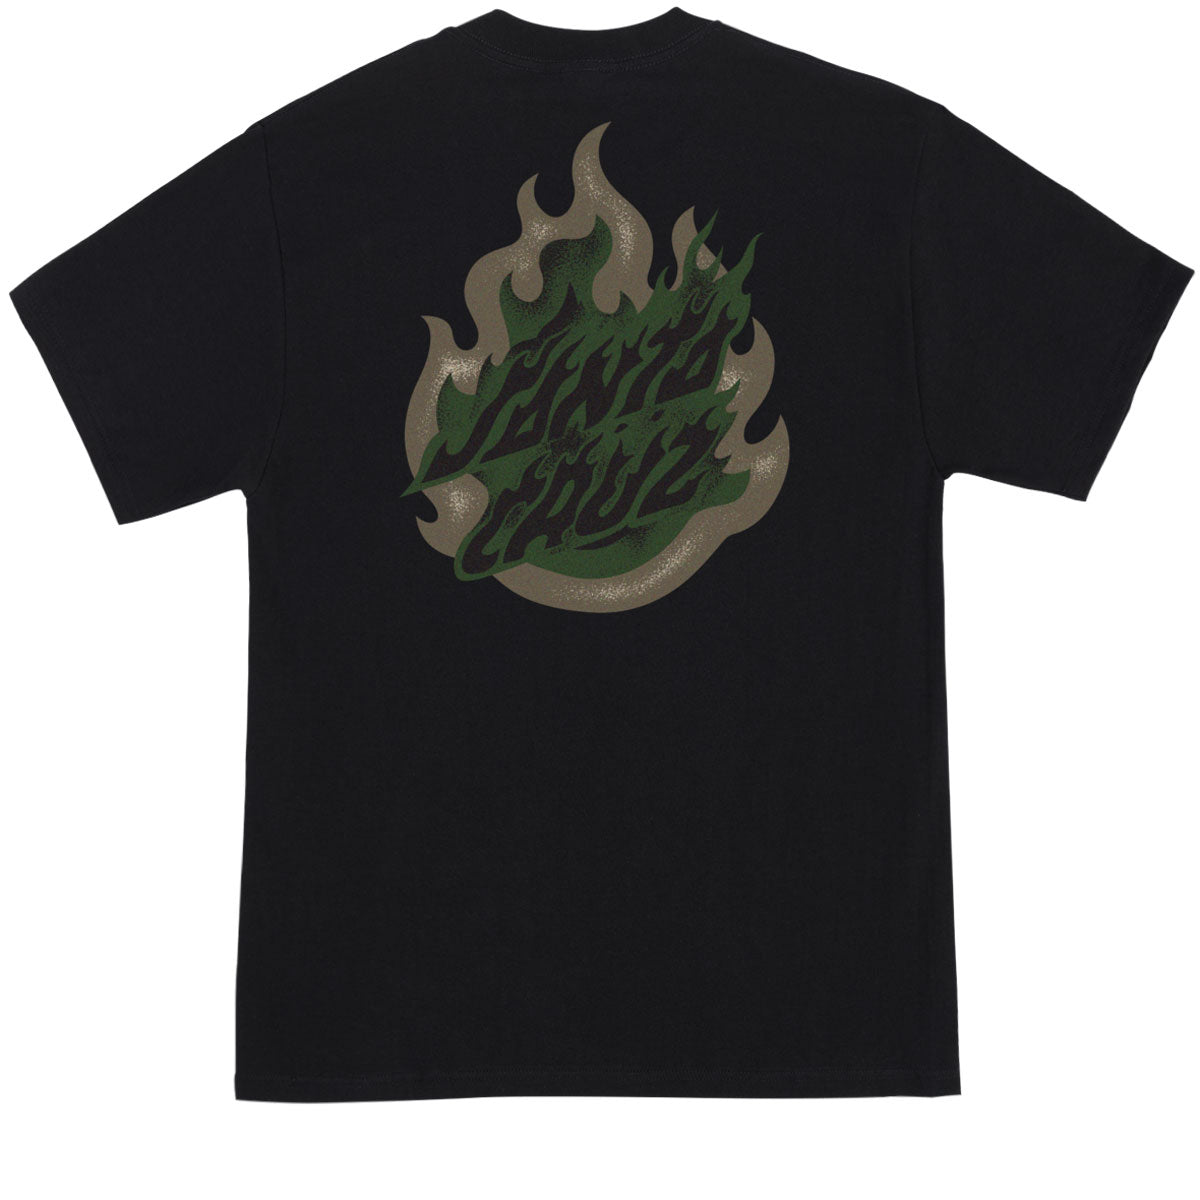 Santa Cruz Ultimate Flame Dot T-Shirt - Black image 1